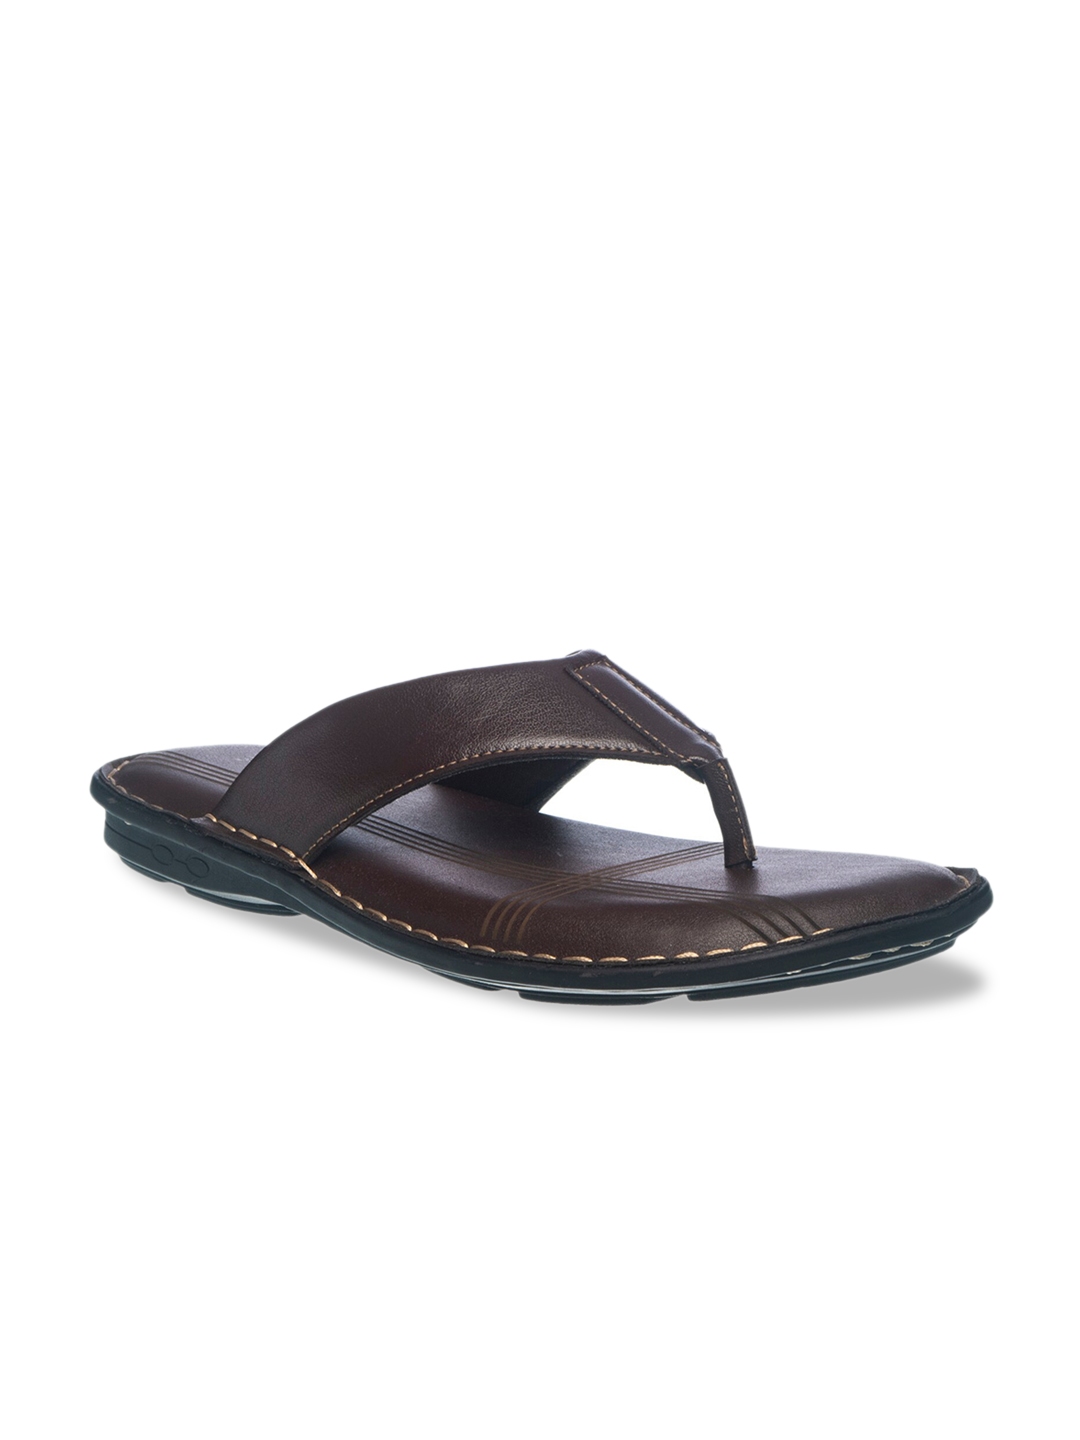 Buy Khadims Men Brown Comfort Sandals - Sandals for Men 12306782 | Myntra